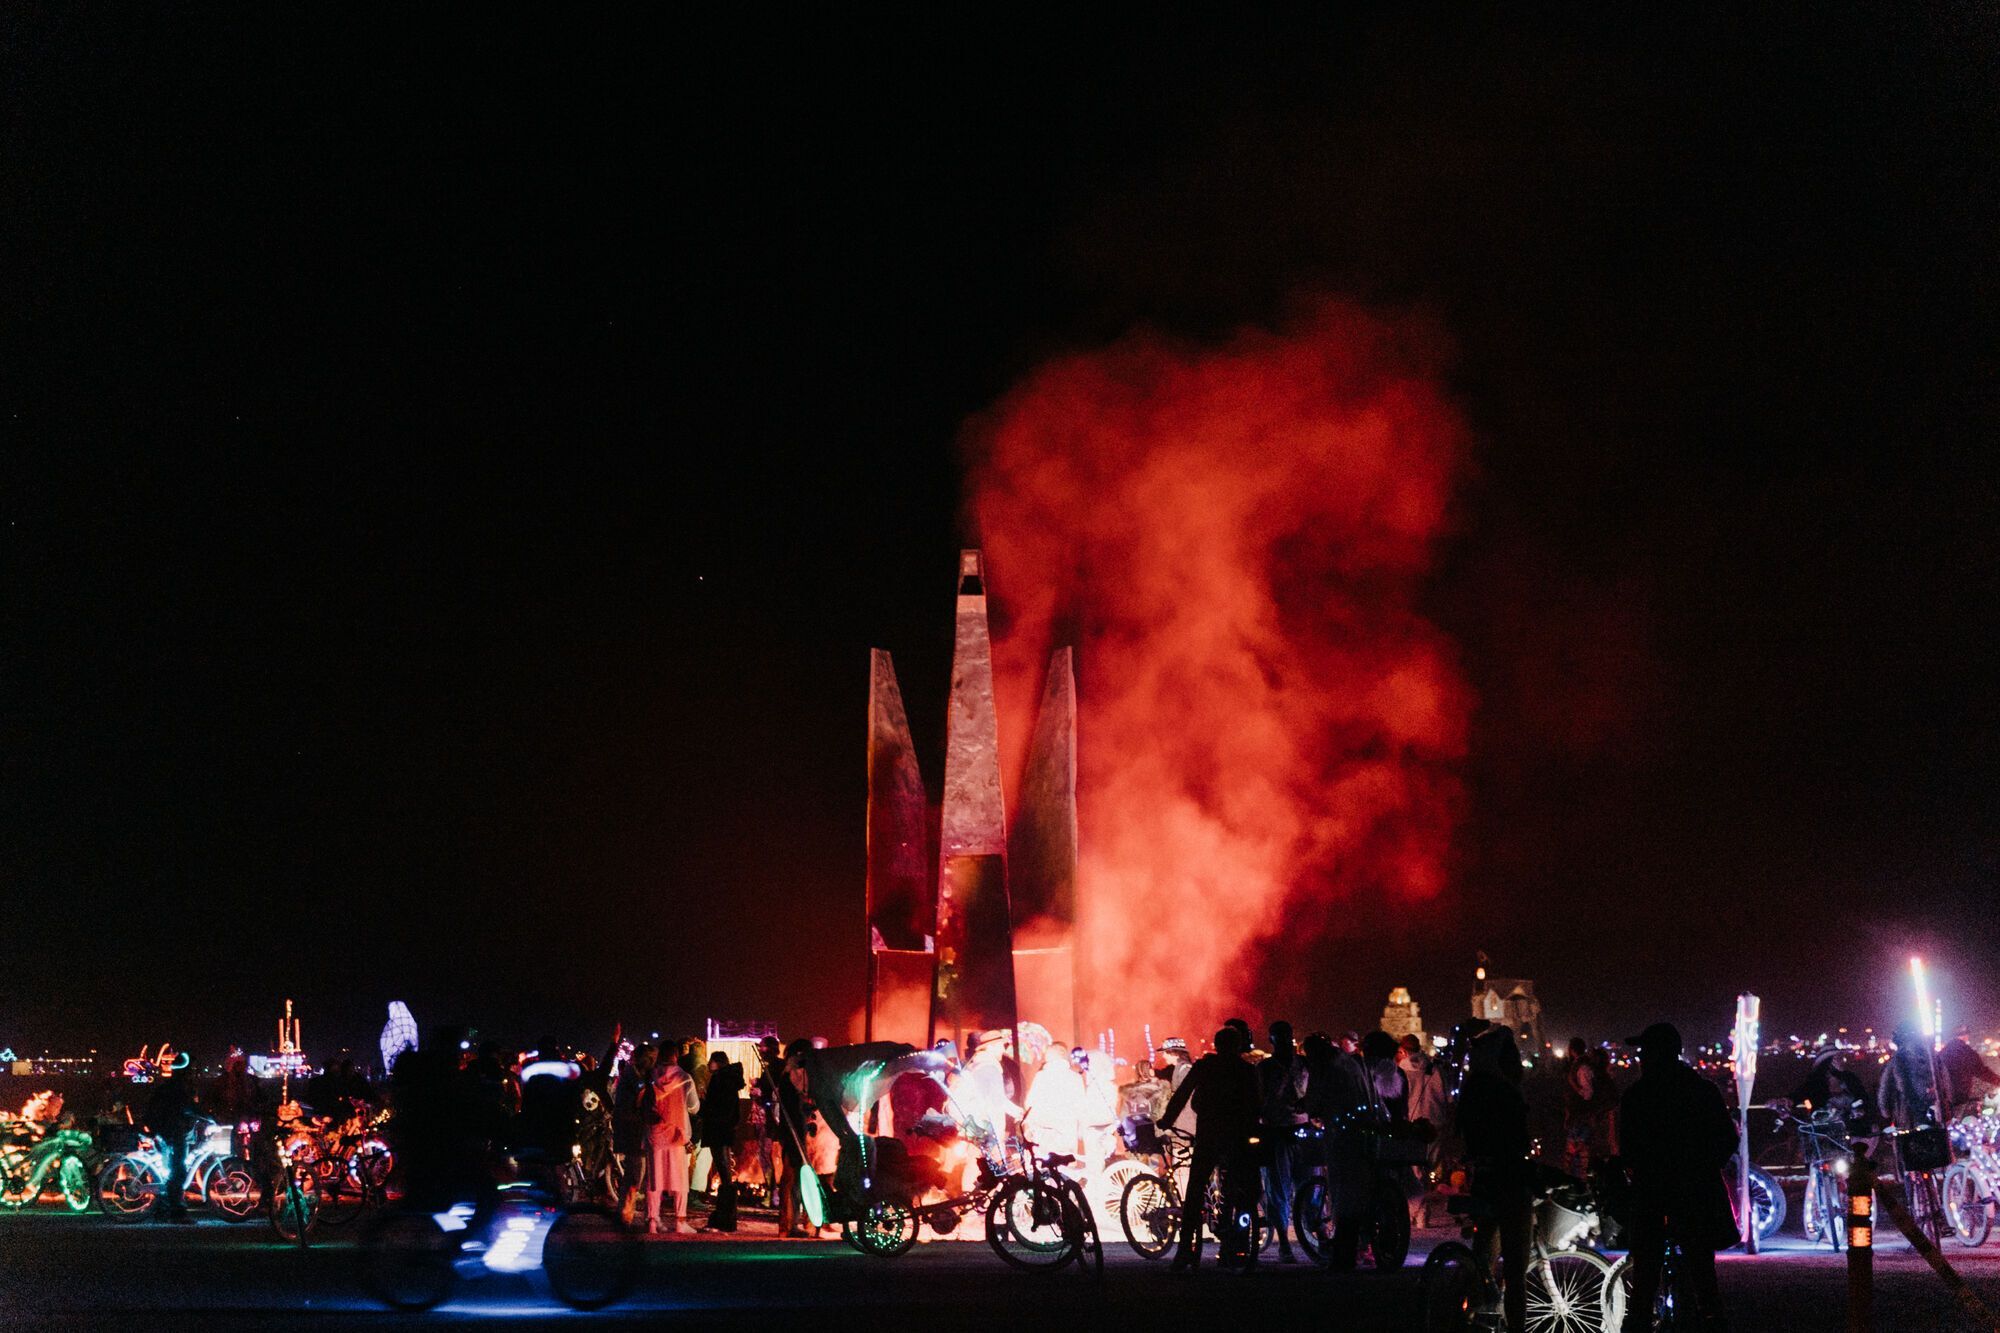 На всемирно известном фестивале Burning Man в США сожгли инсталляцию из Украины: Виталий Дейнега рассказал о ее символизме. Видео